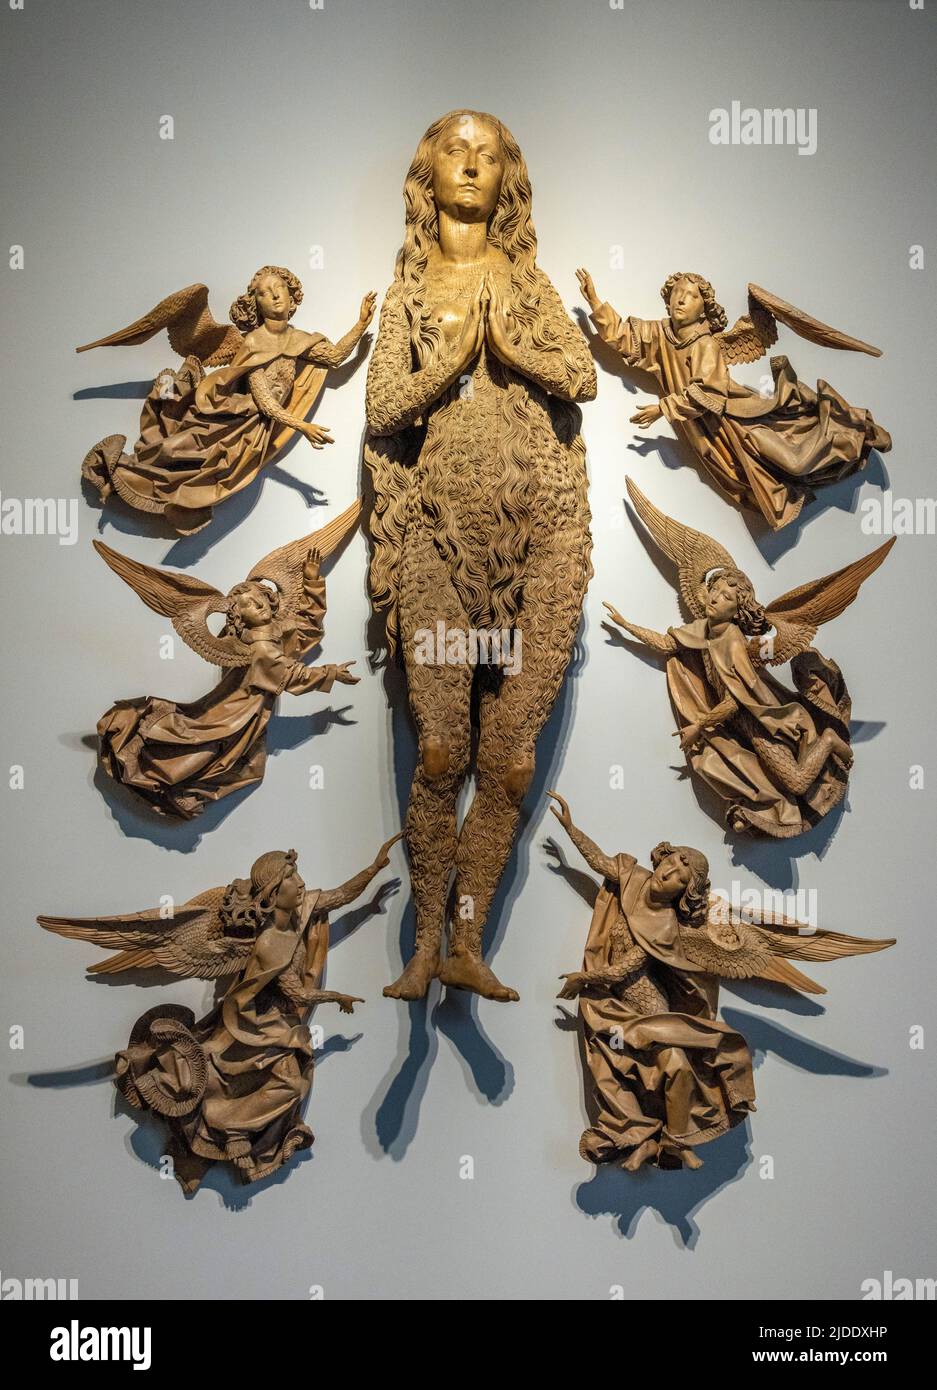 Sculpture en bois sculpté, Ascension de St Mary Magdalene, par Tilman Riemenschneider, 1492, Bayerisches Nationalmuseum, Munich, Allemagne Banque D'Images